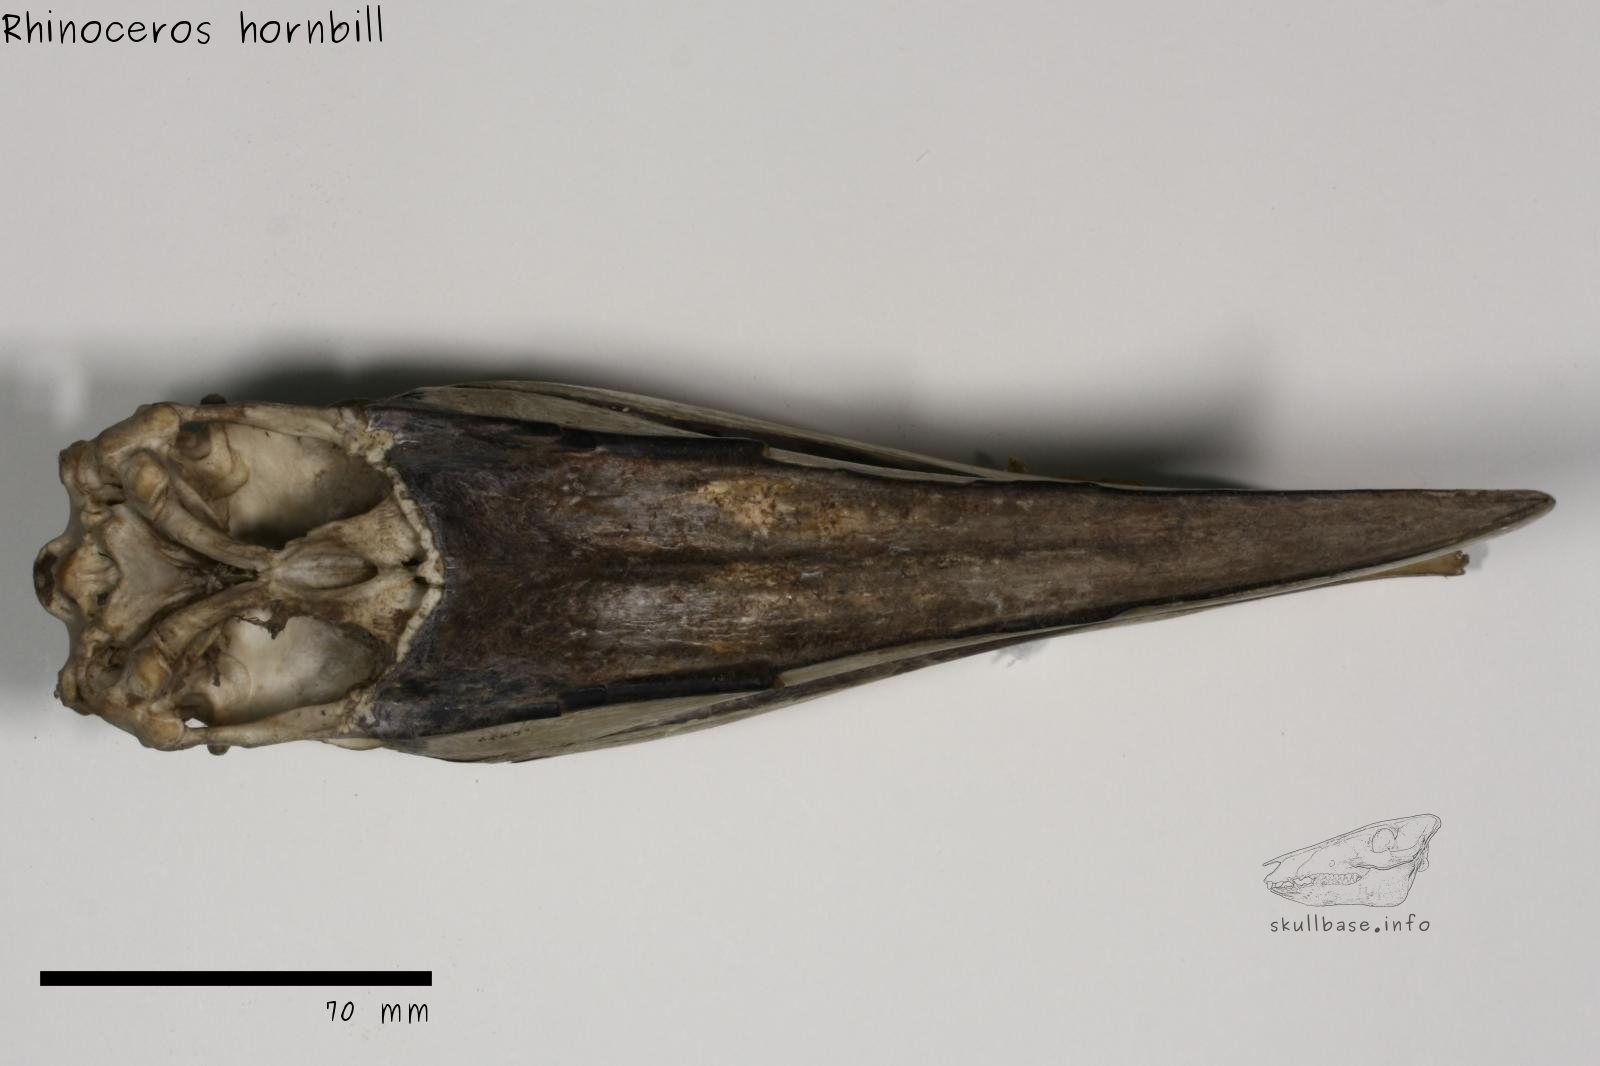 Rhinoceros hornbill (Buceros rhinoceros) skull ventral view